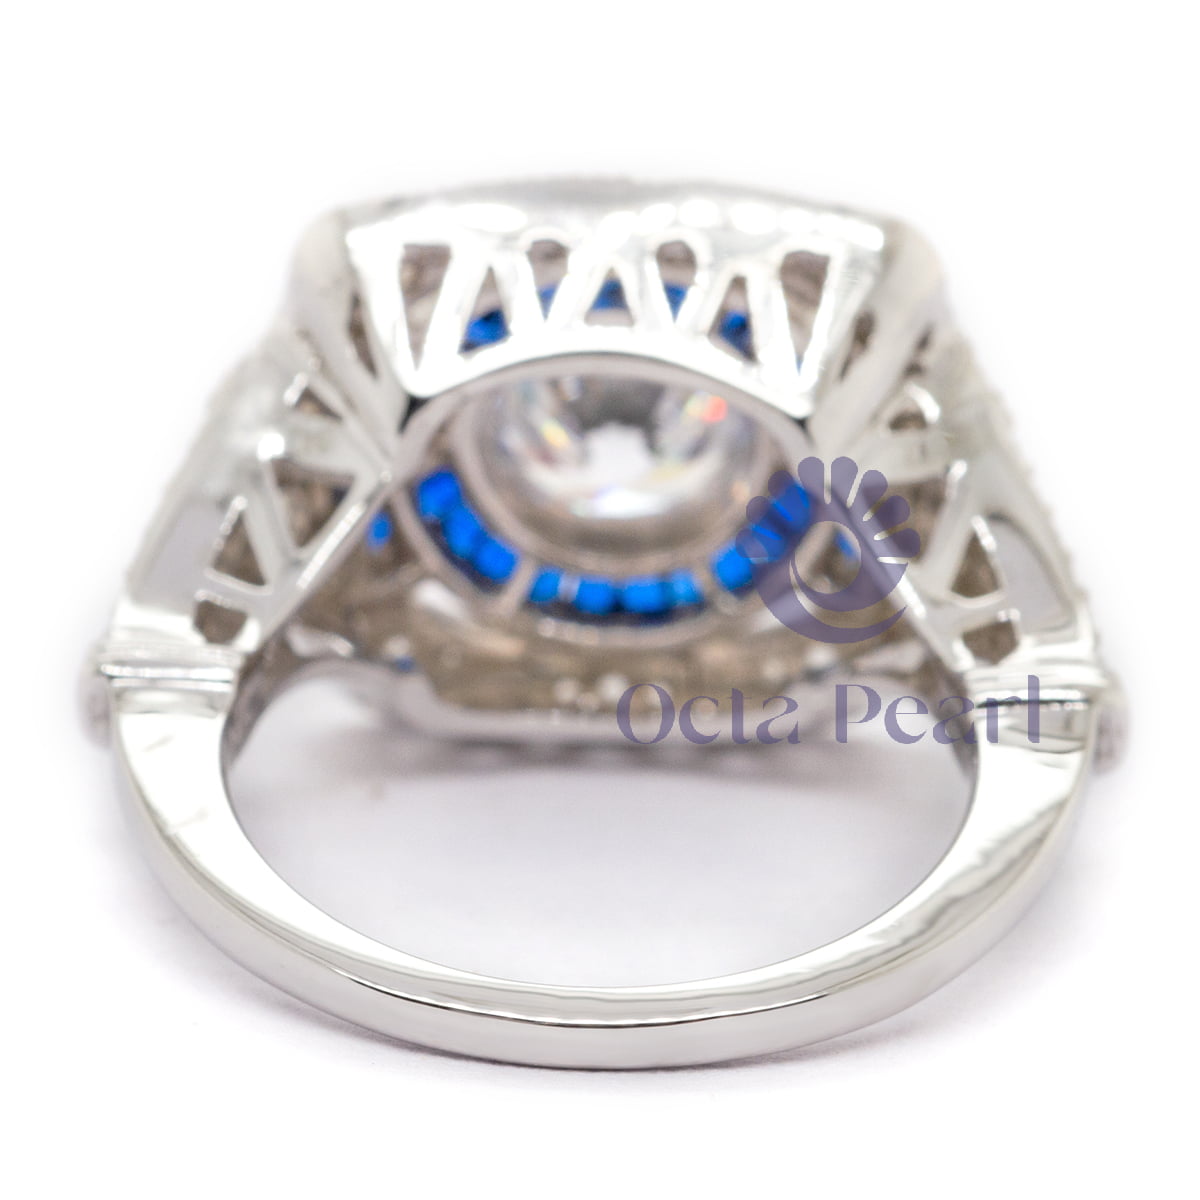 Round & Blue Sapphire Baguette Cut CZ Stone Milgrain Art Deco Vintage Ring